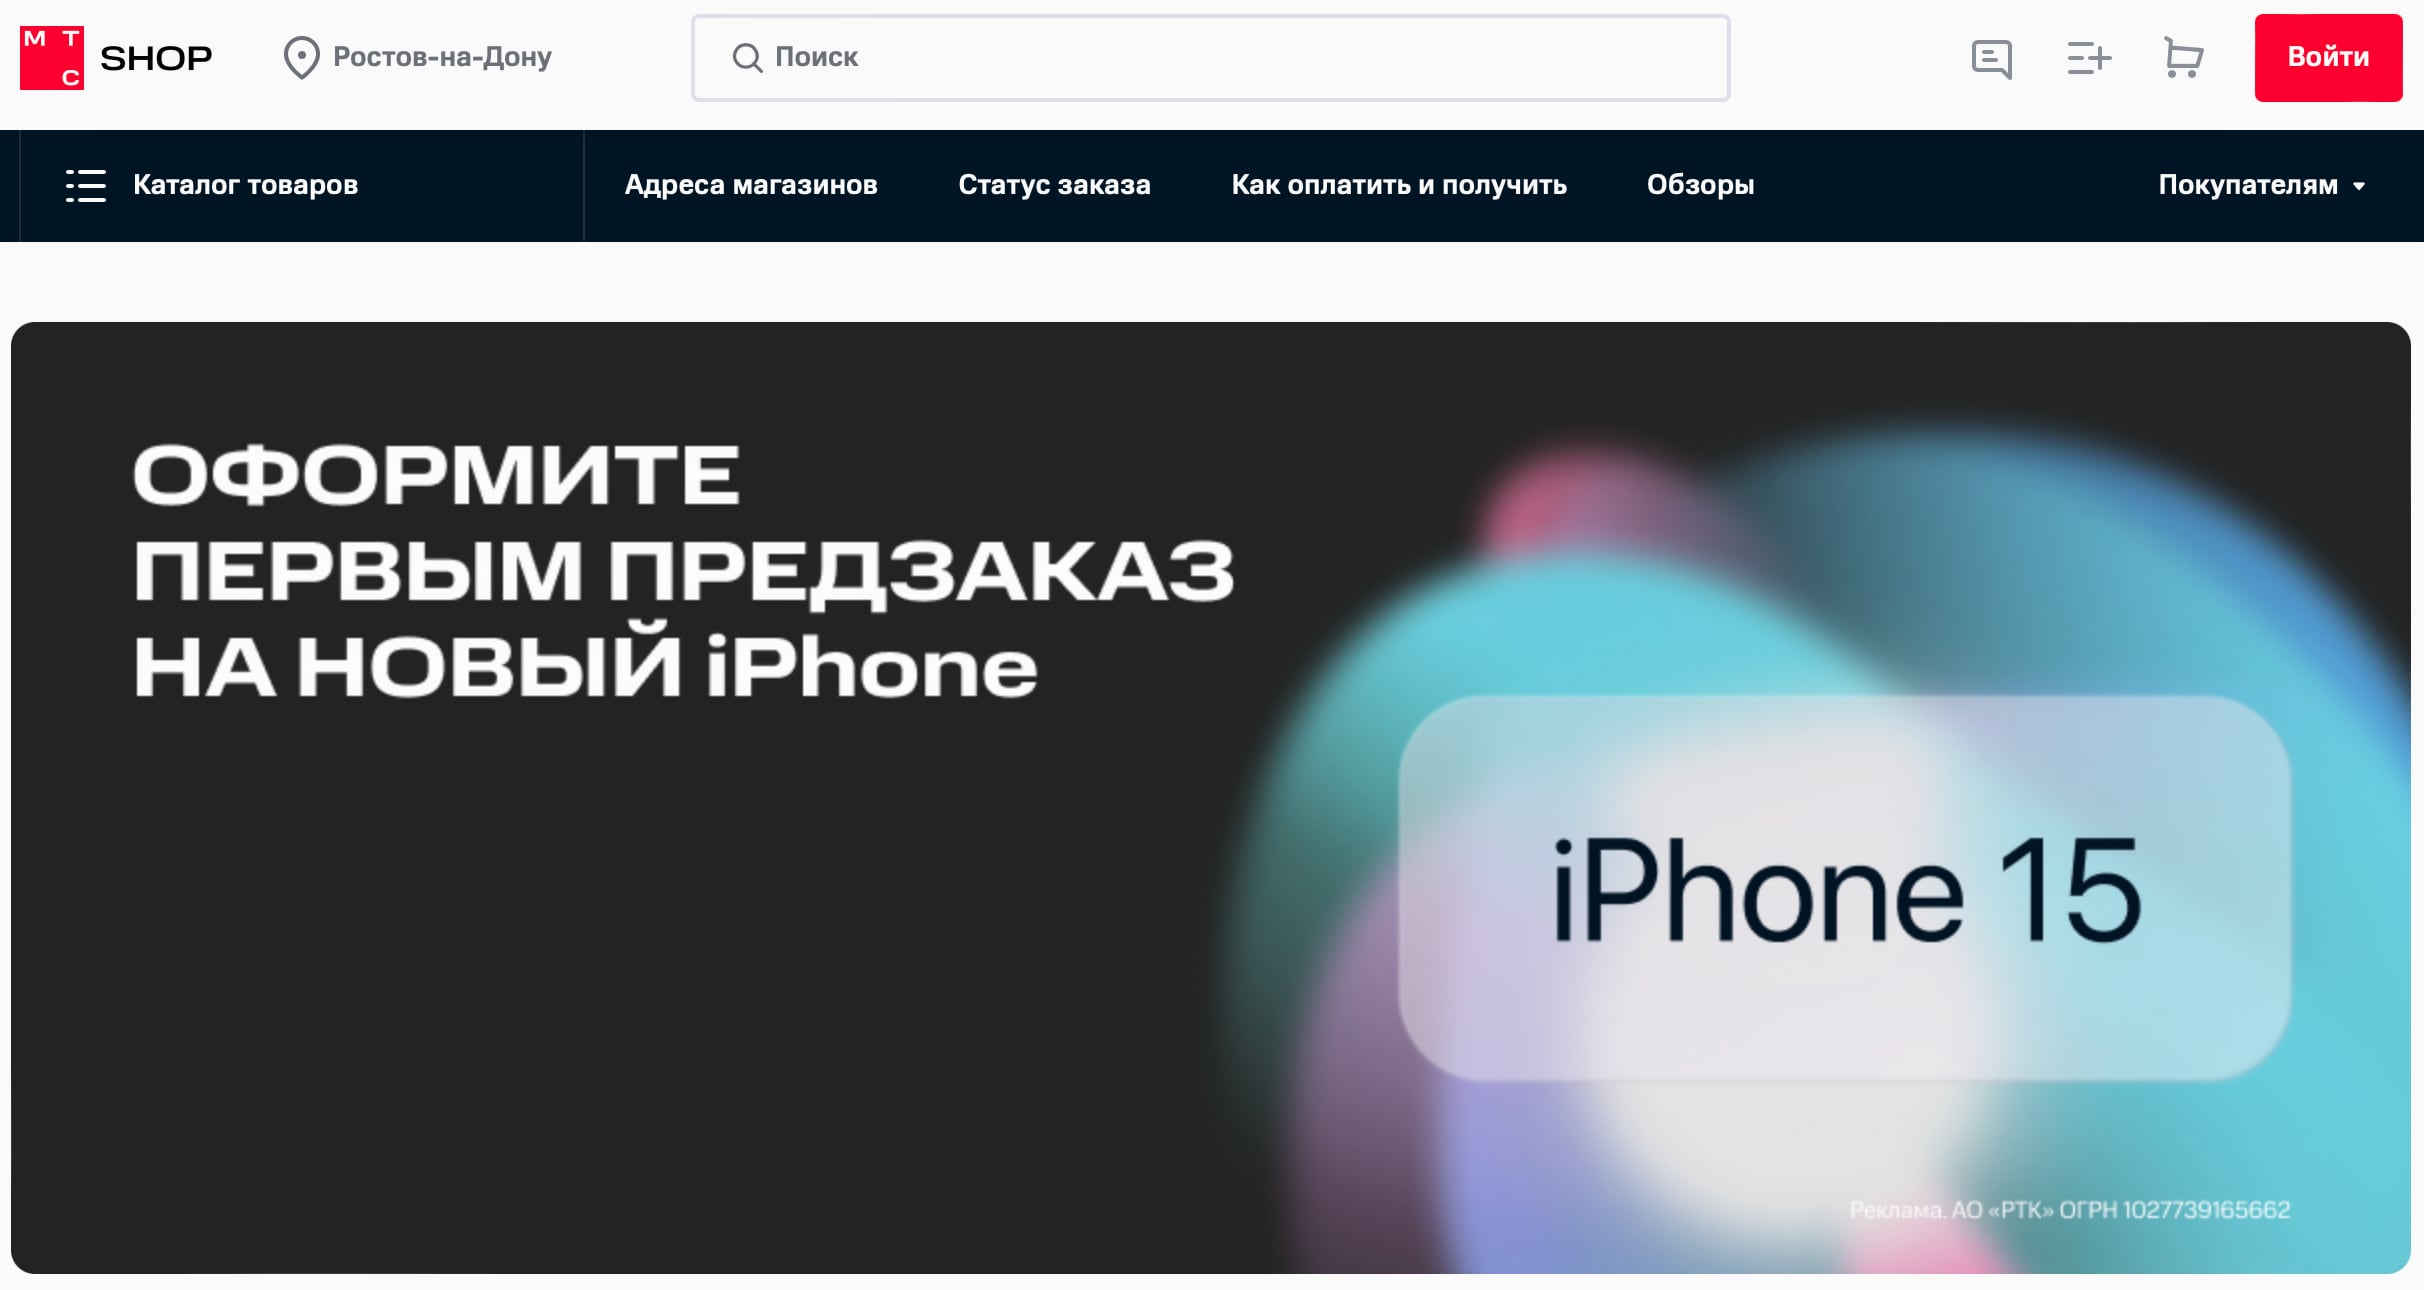 iPhone 15 ещё не анонсирован, а МТС уже принимает предзаказы за 50 тысяч рублей